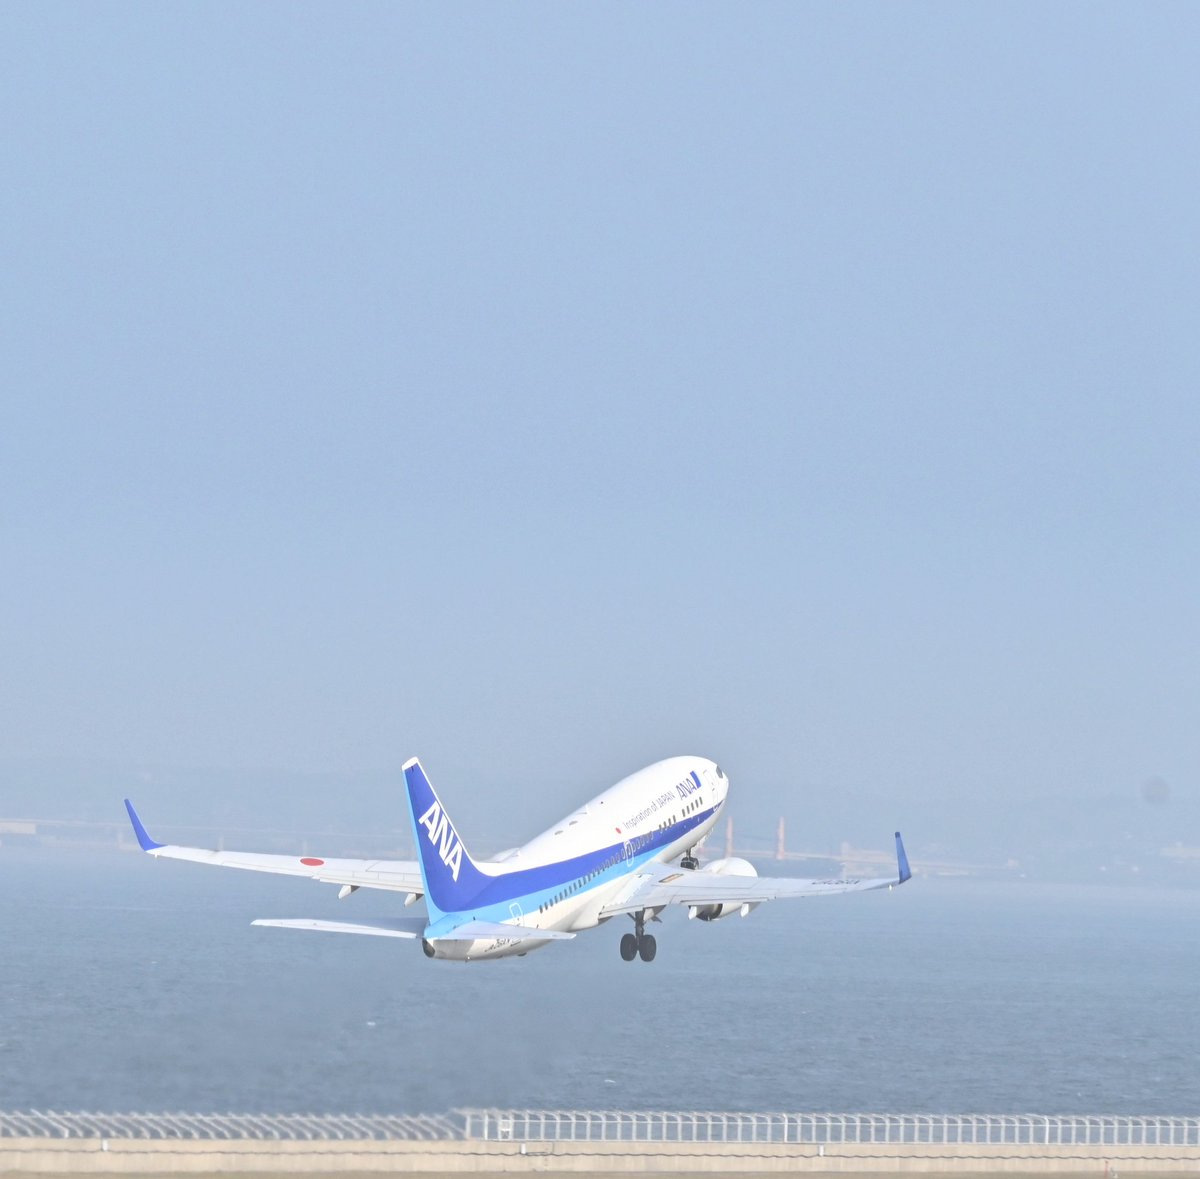 中部国際空港セントレア 長崎行きのana371便はb737 700型機で出発です 6月で退役か決まってる同機ですが今日も元気にお客様を運びます 応援したくなりますね 37 700型機の退役について T Co Zprjjm8dtq